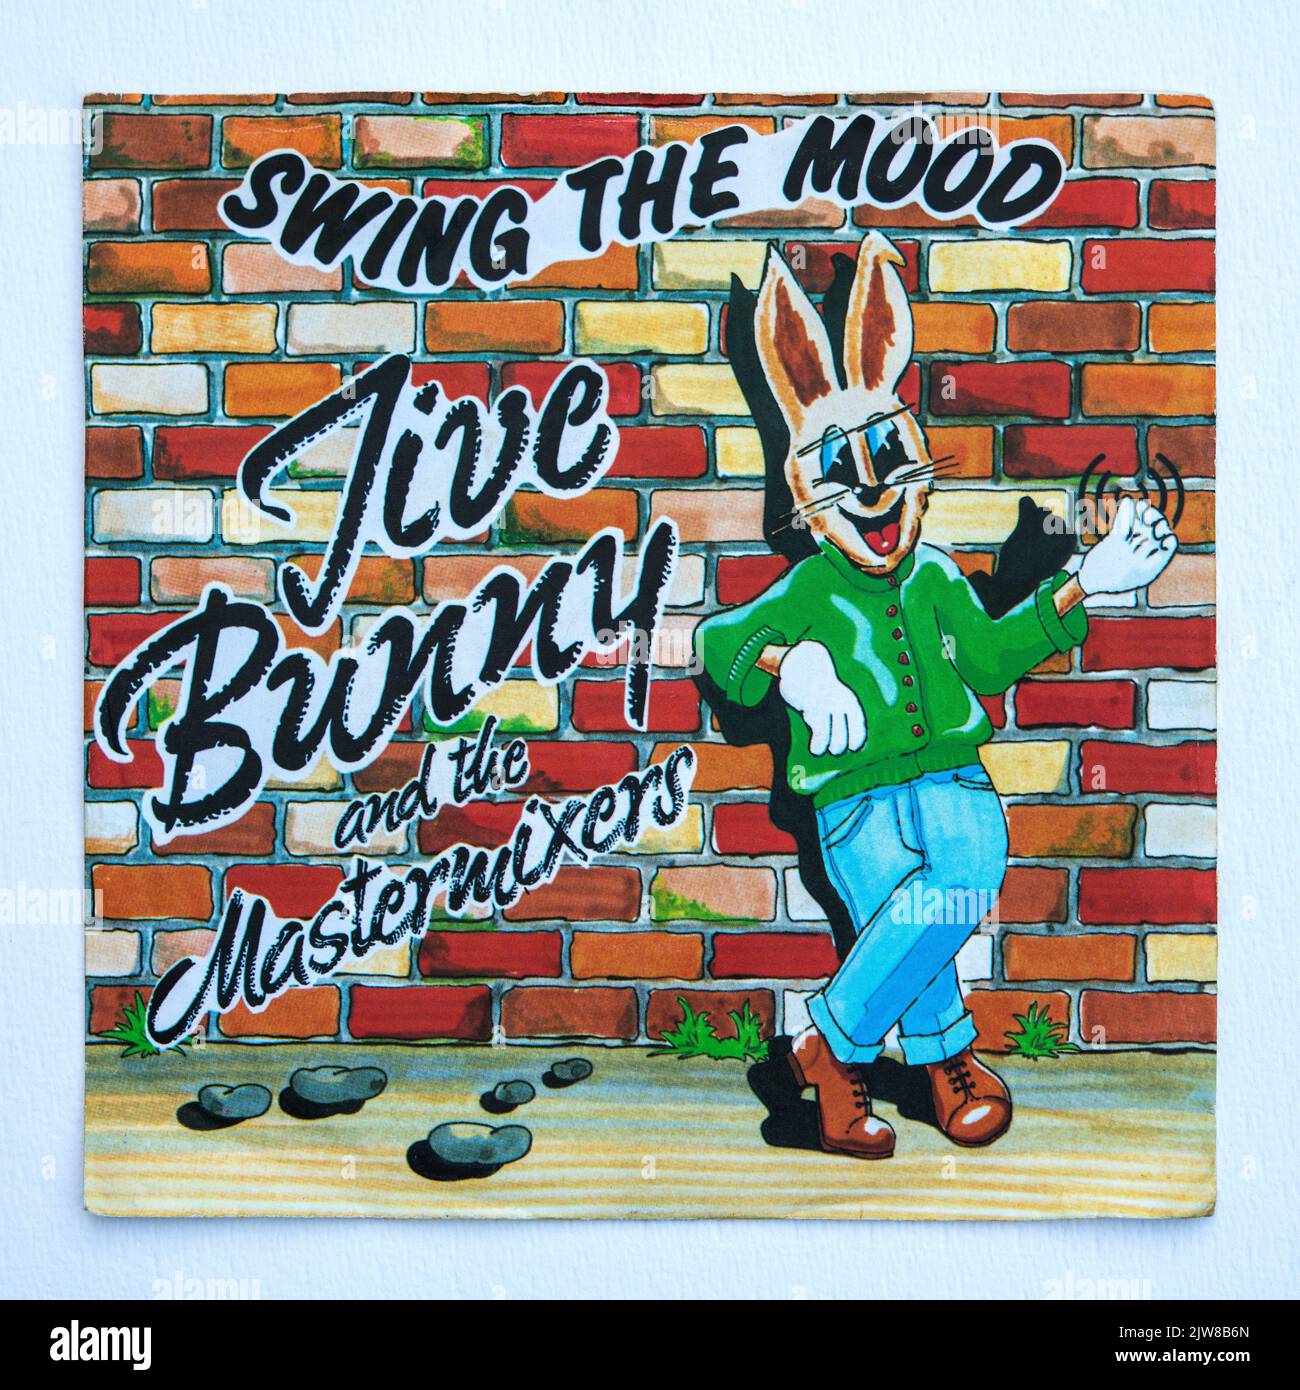 Bildercover der sieben Zoll großen Single-Version von Swing the Mood von Jive Bunny und den Mastermixern, die 1989 veröffentlicht wurde. Stockfoto